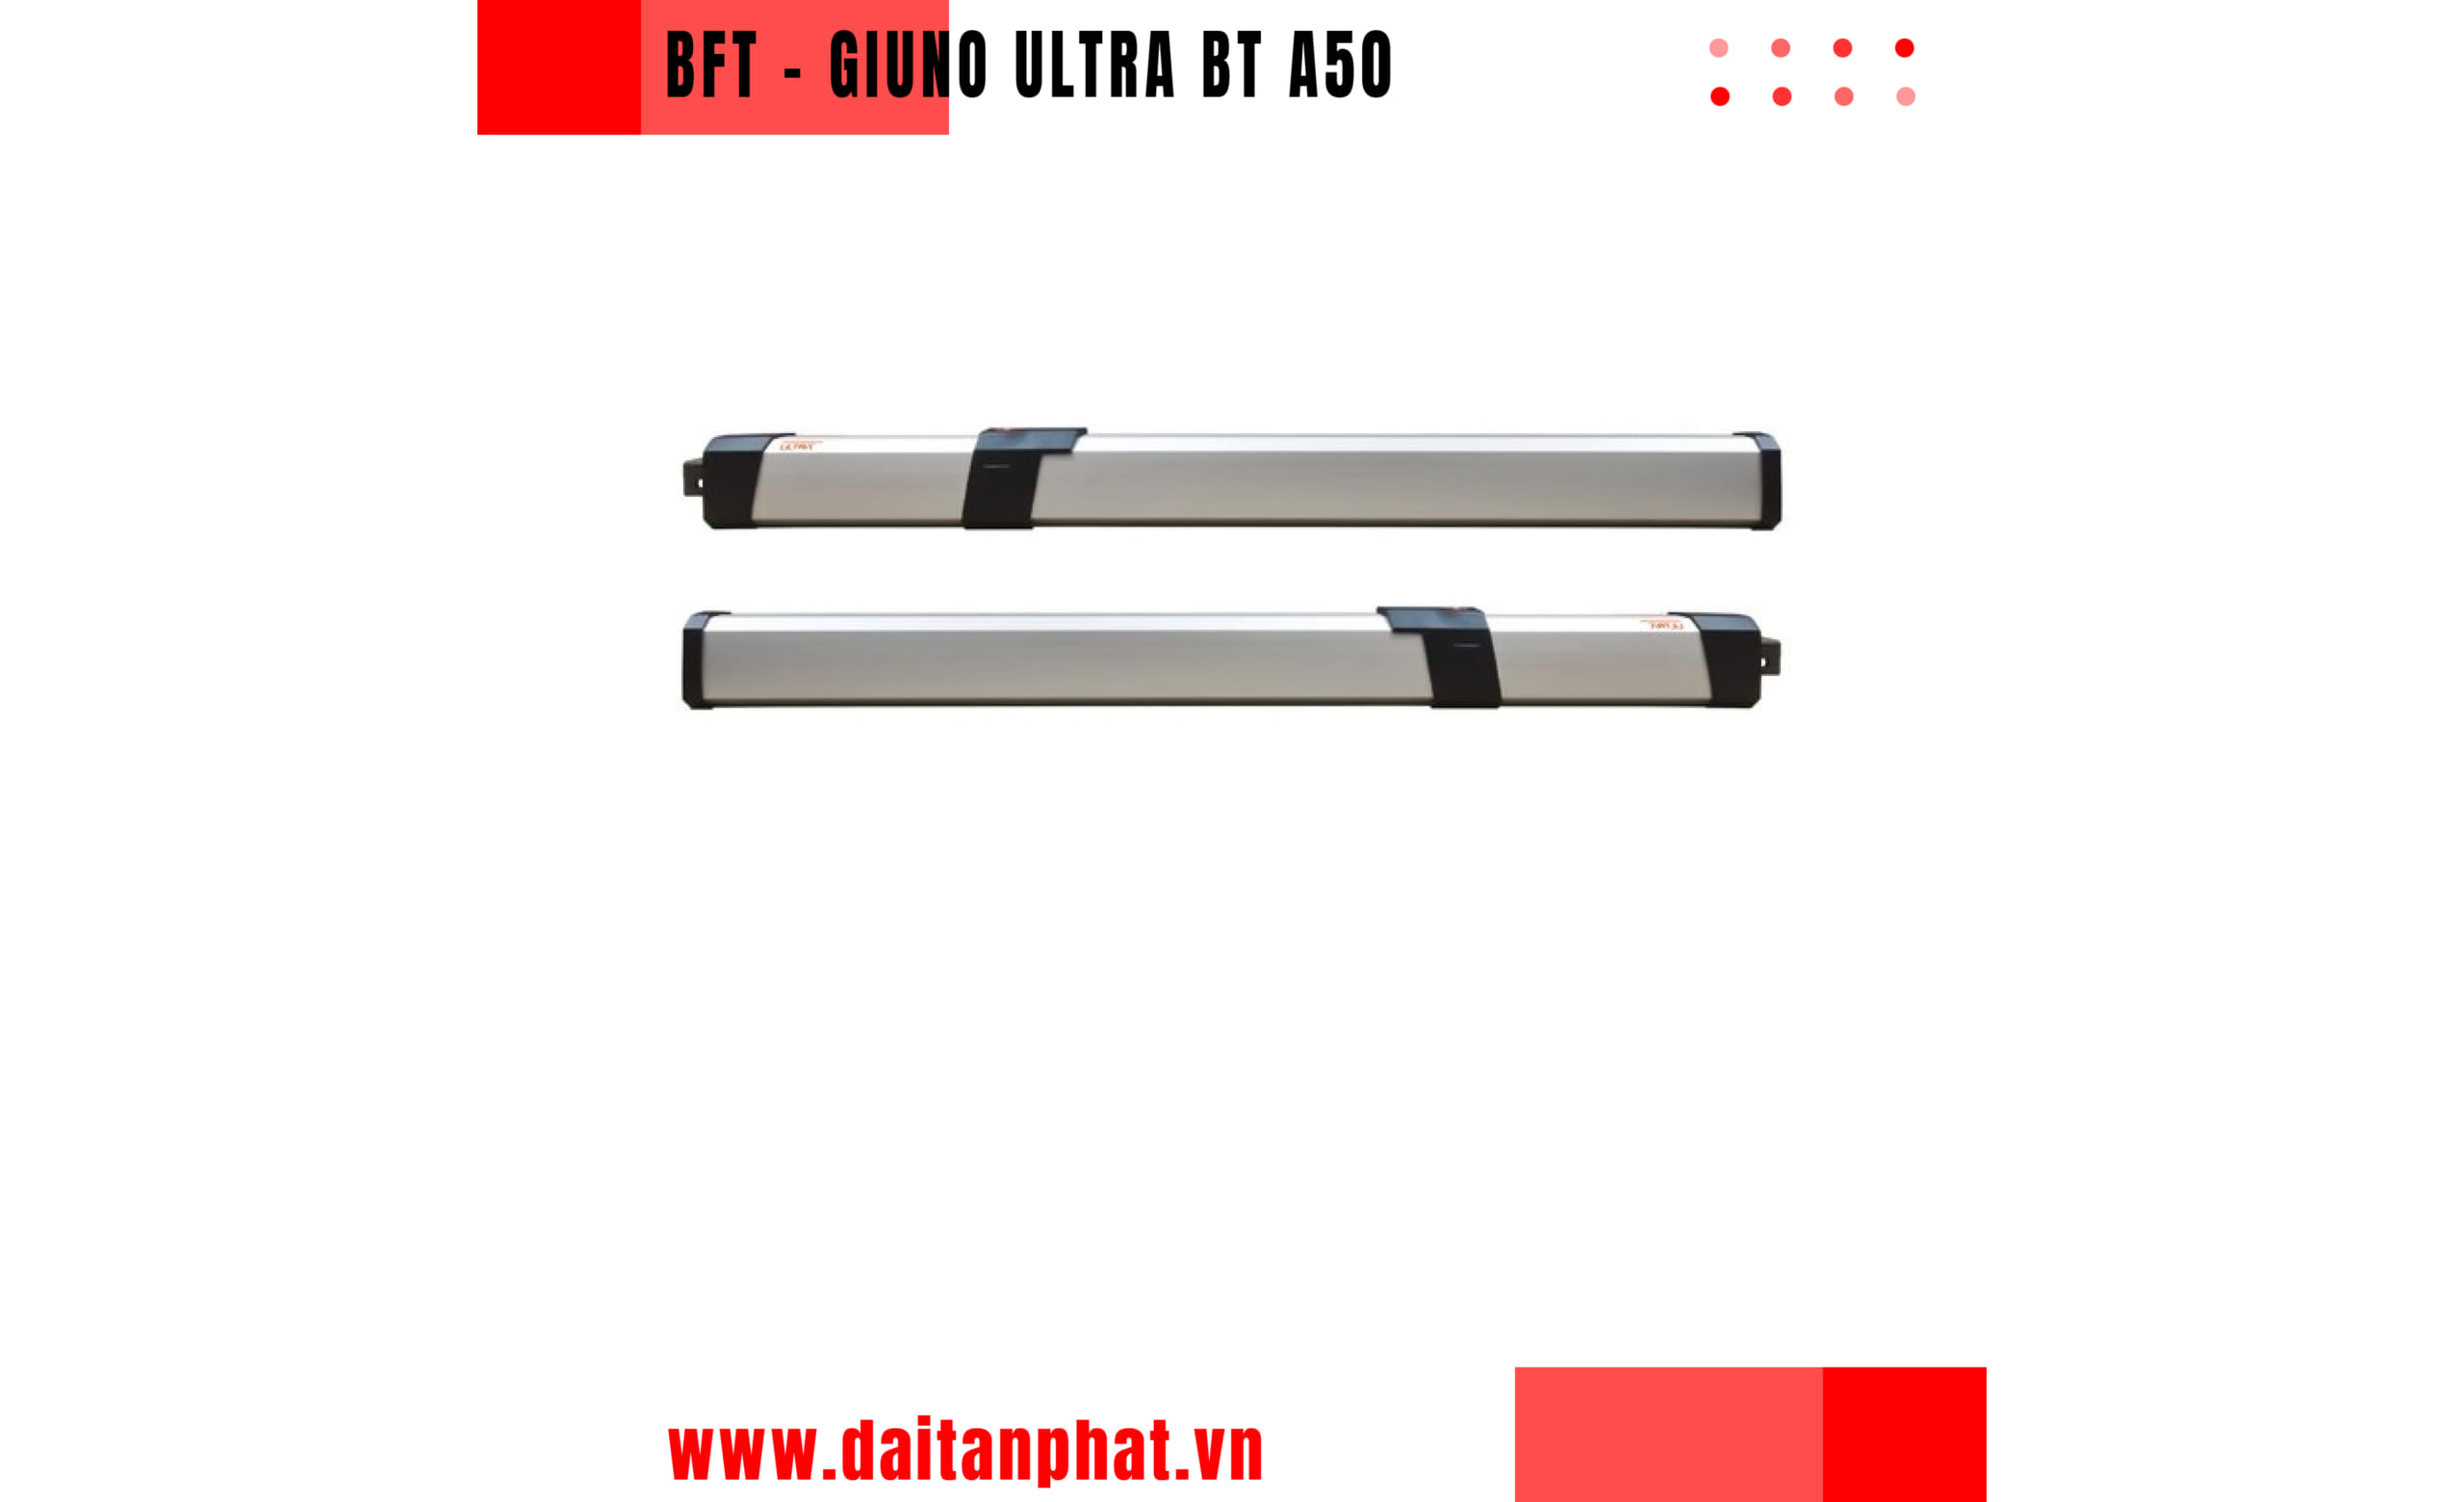 BFT GIUNO ULTRA BT A20/A50